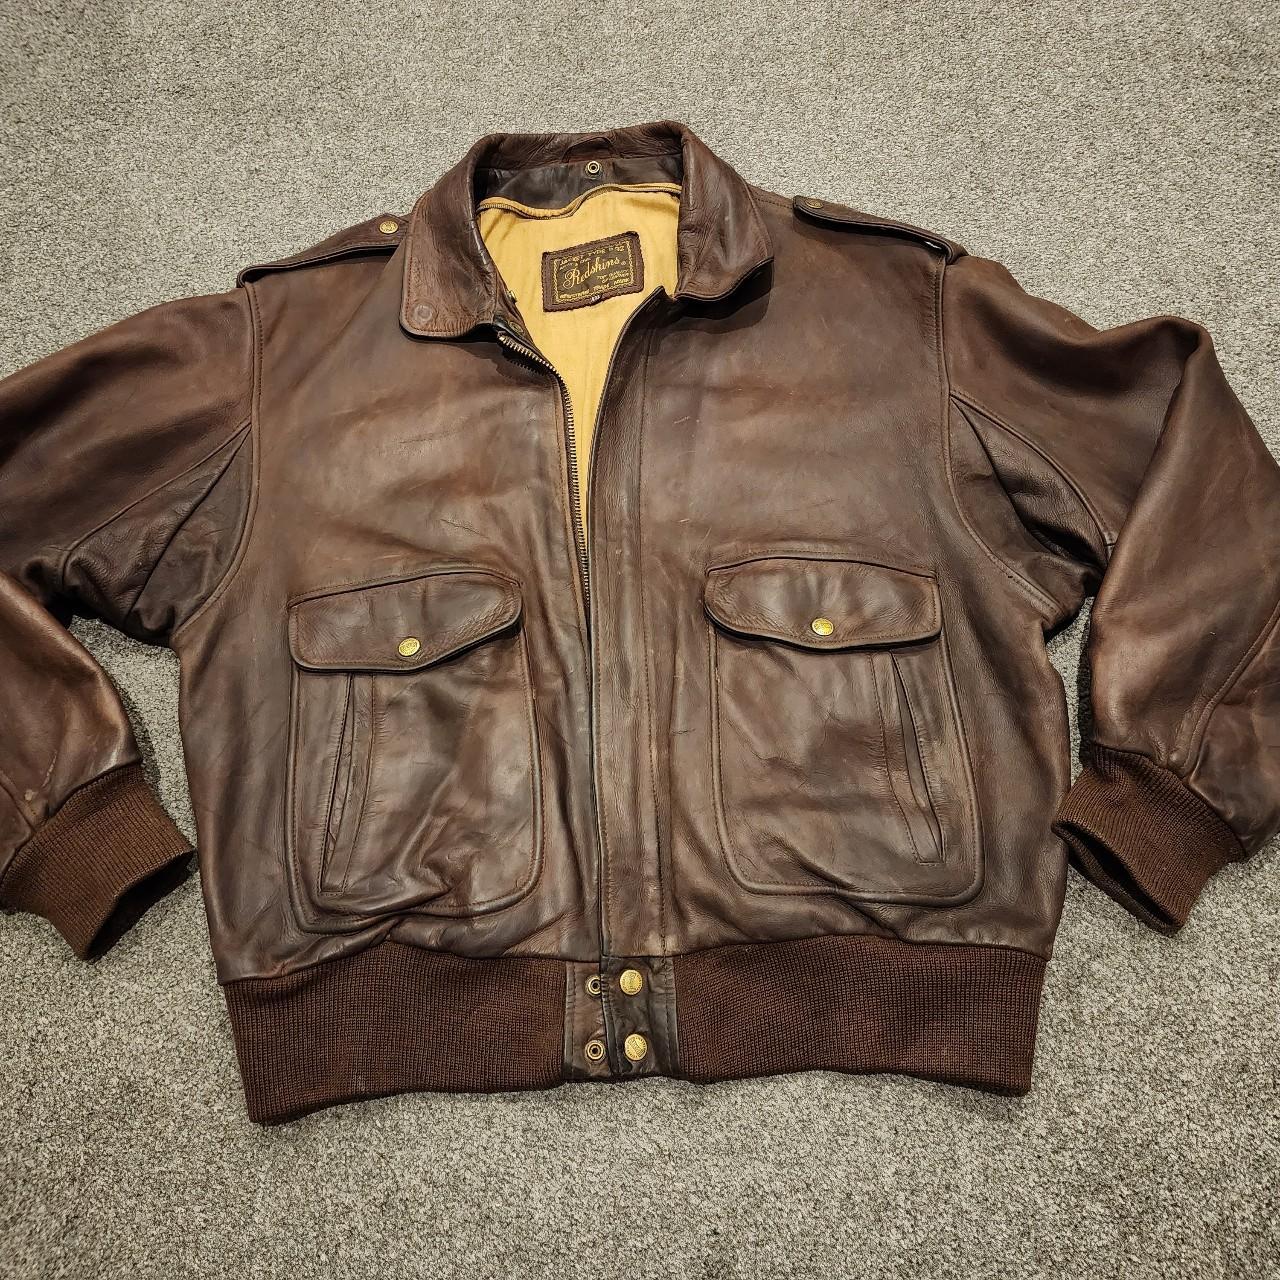 Vintage B32 Redskins brown leather jacket #leather... - Depop